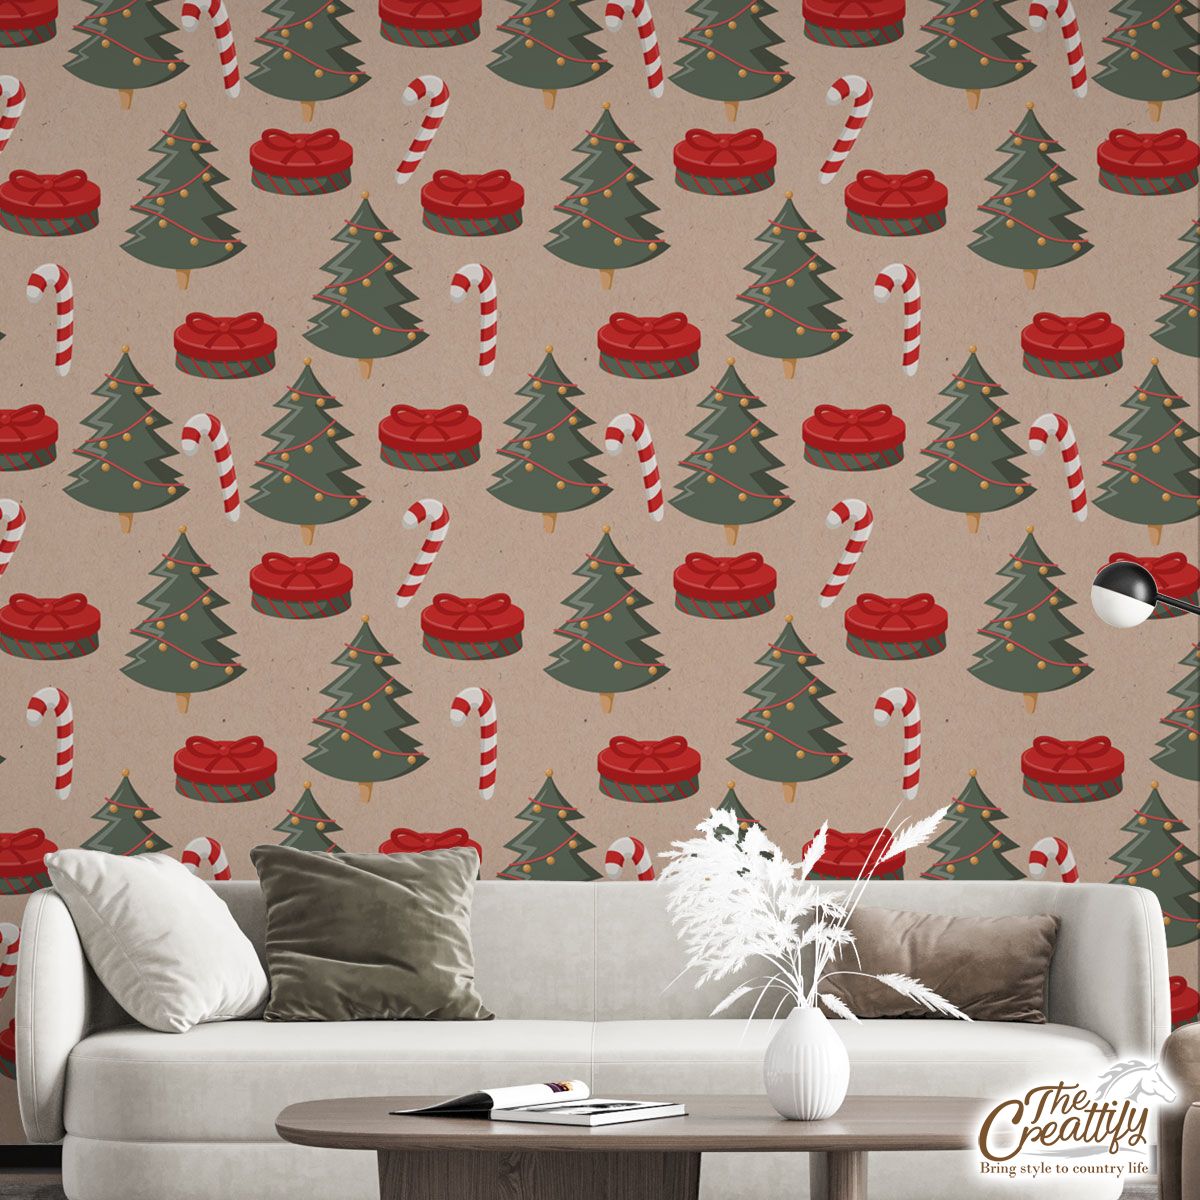 Christmas Tree, Christmas Gift, Candy Cane Wall Mural